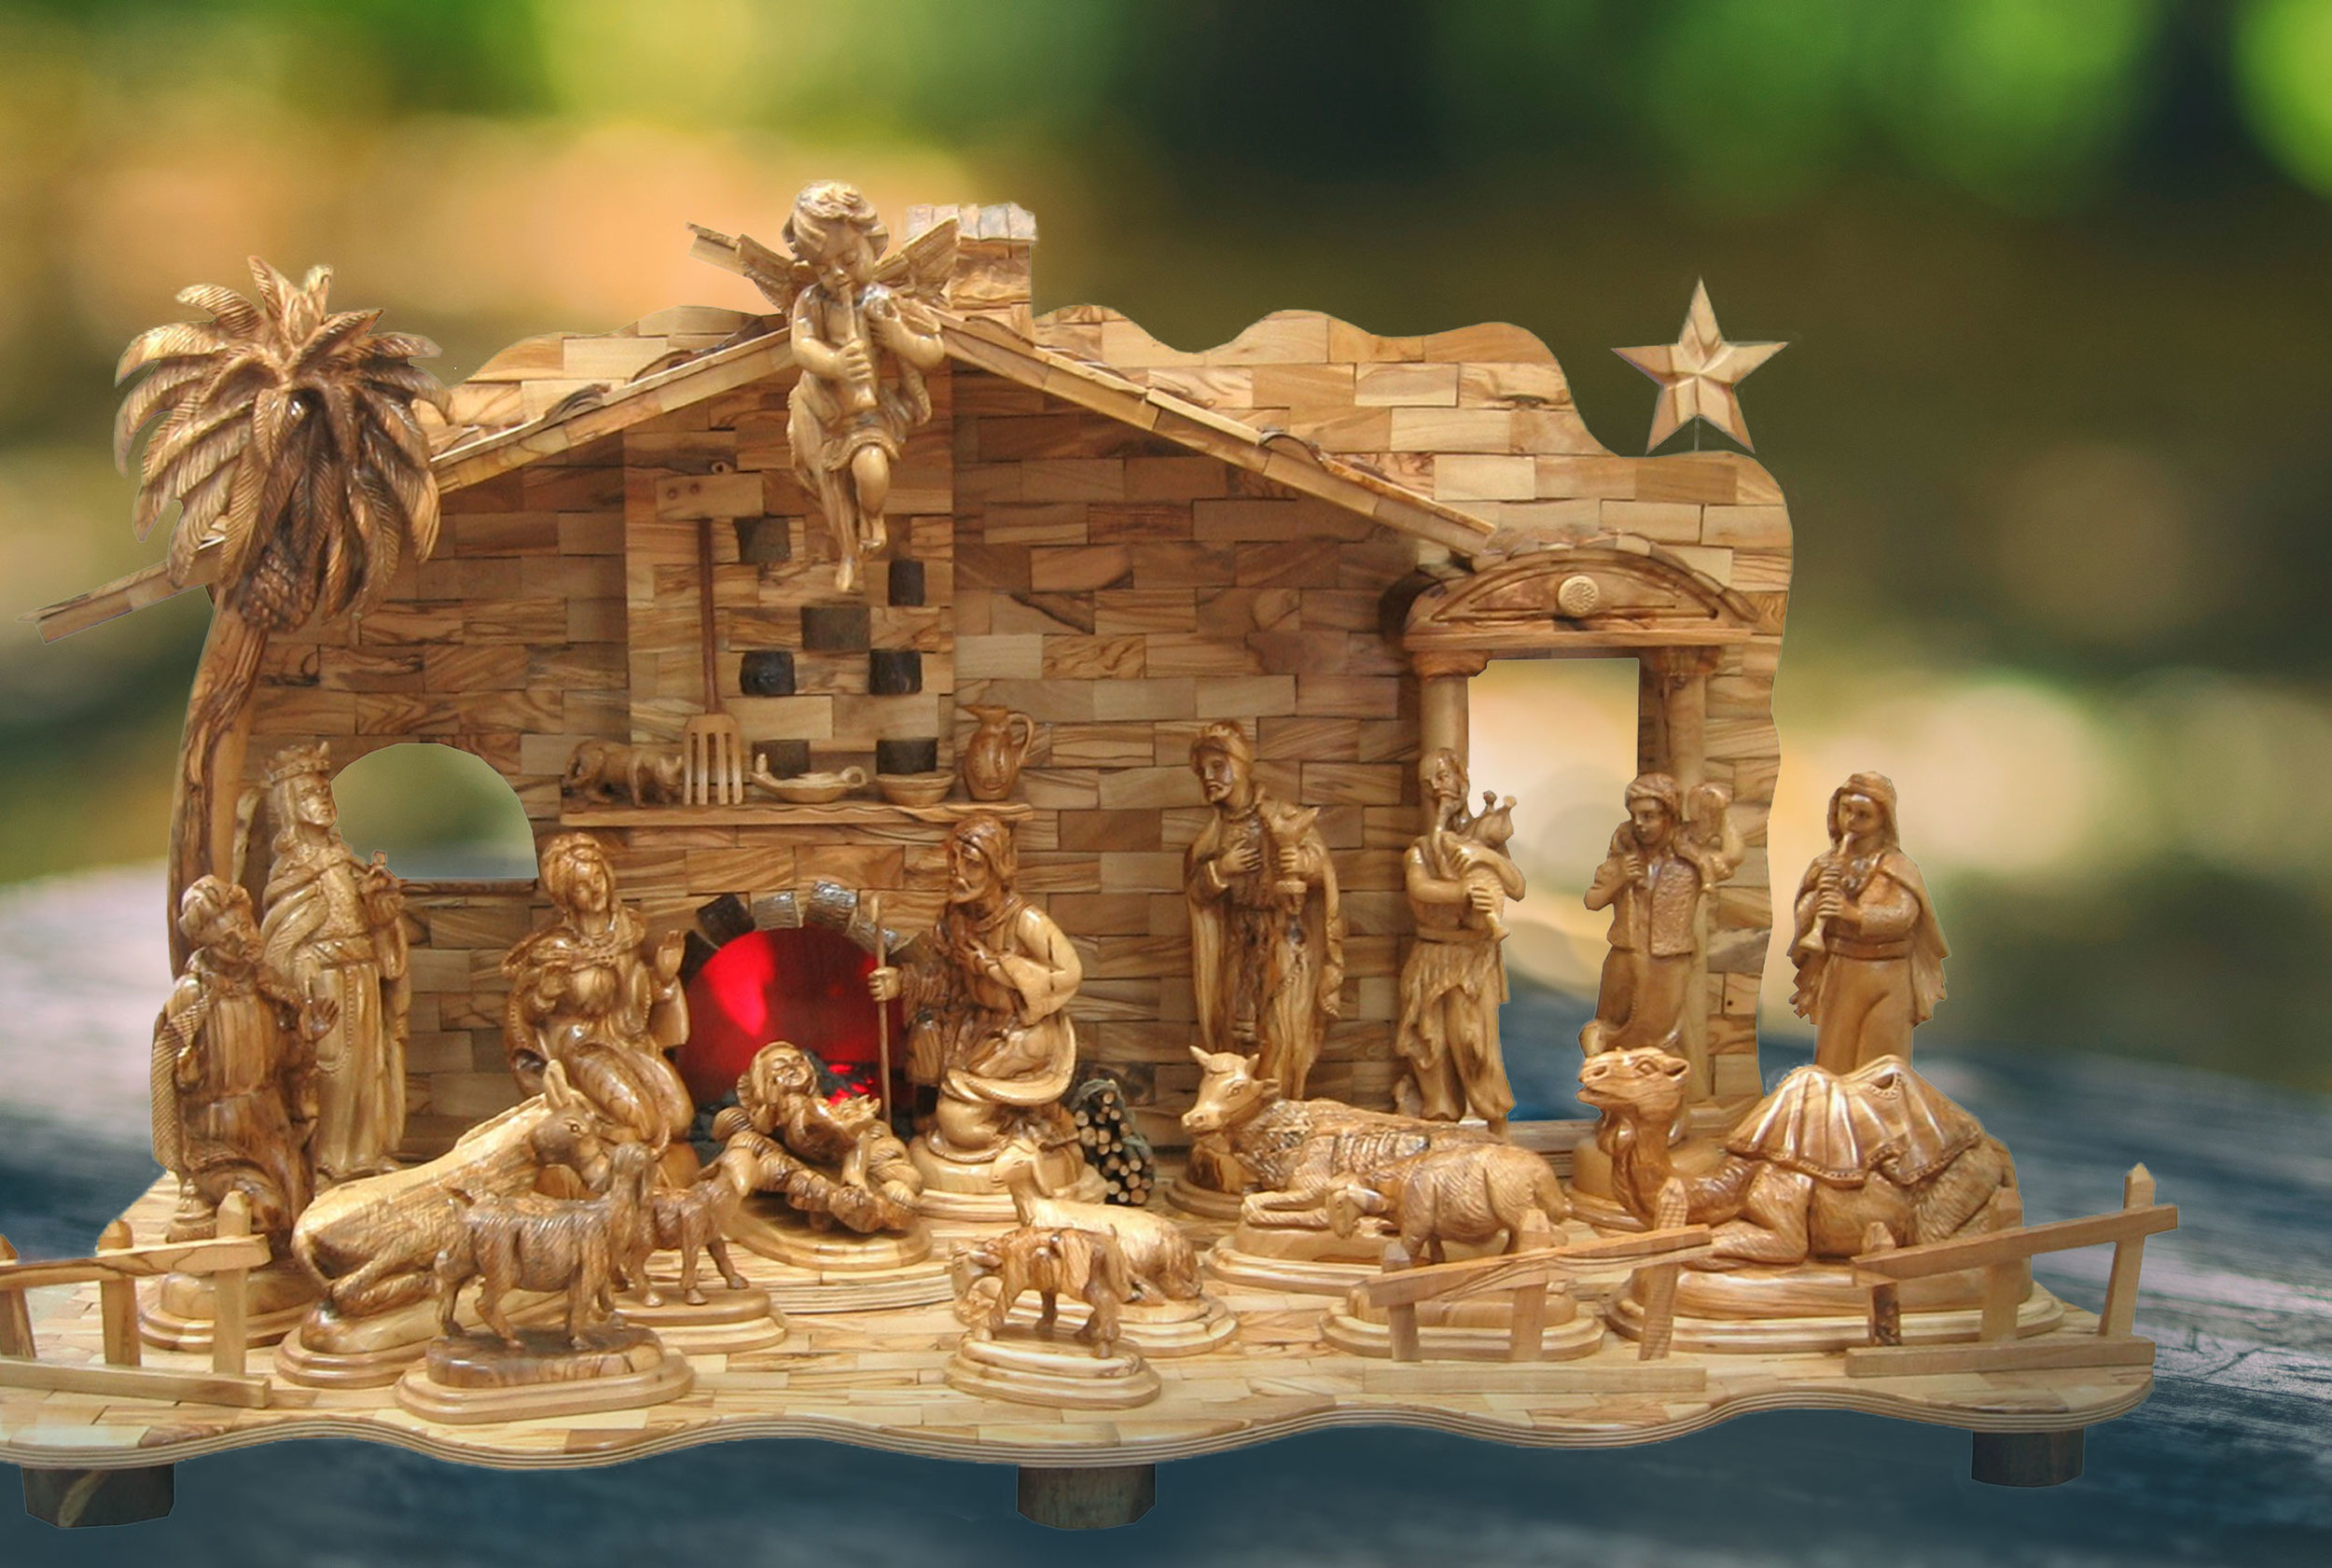 Olive Wood Christmas — Olive Wood Nativity Sets and Holy Land Art